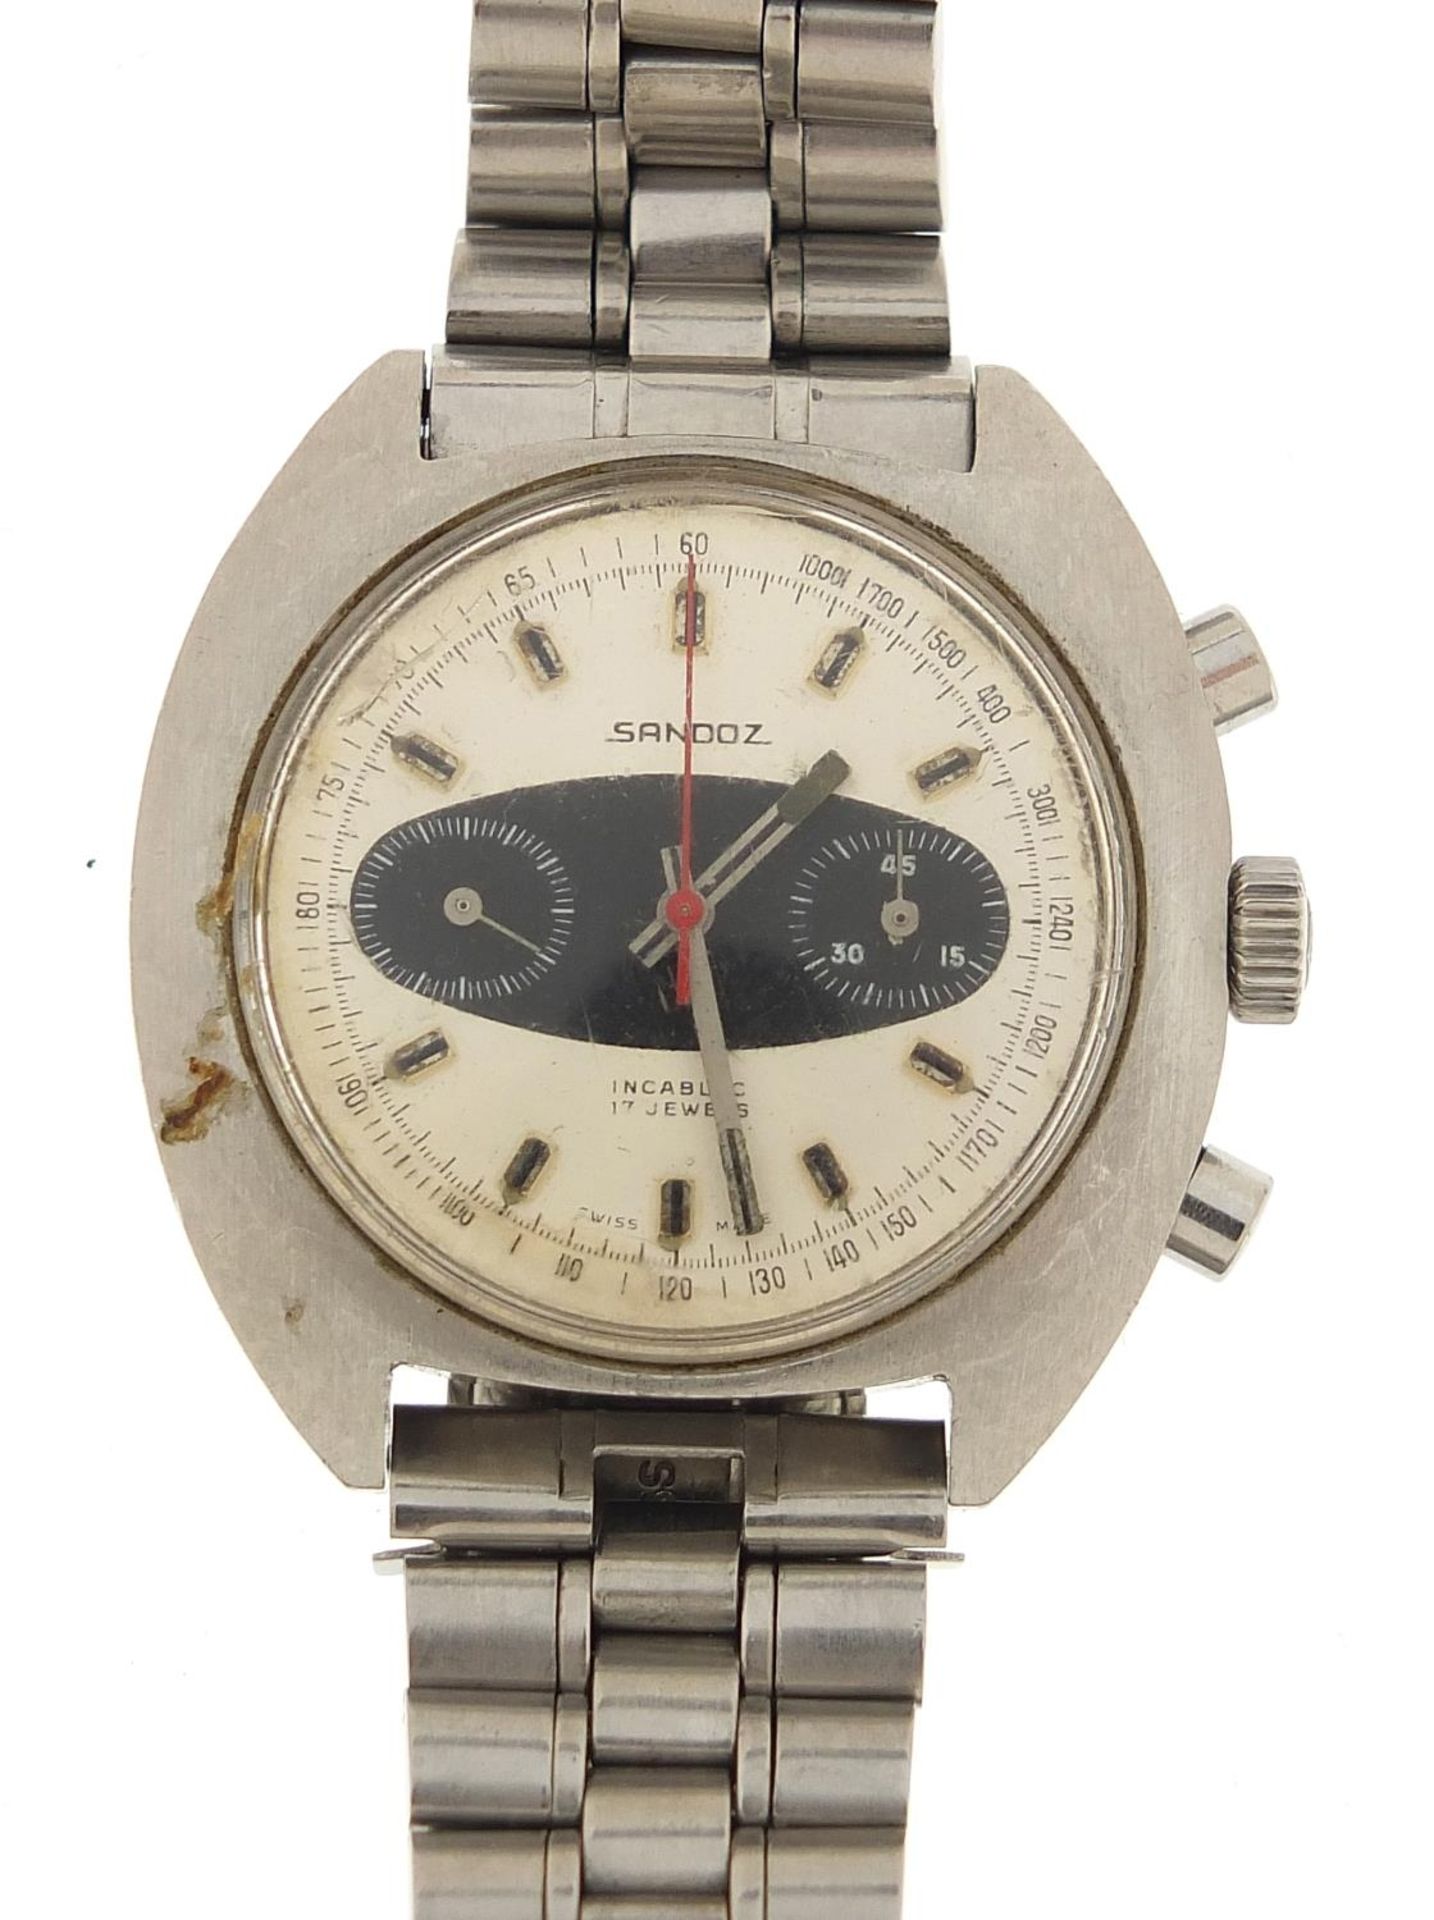 Sandoz, vintage gentlemen's chronograph wristwatch, the case 40mm wide